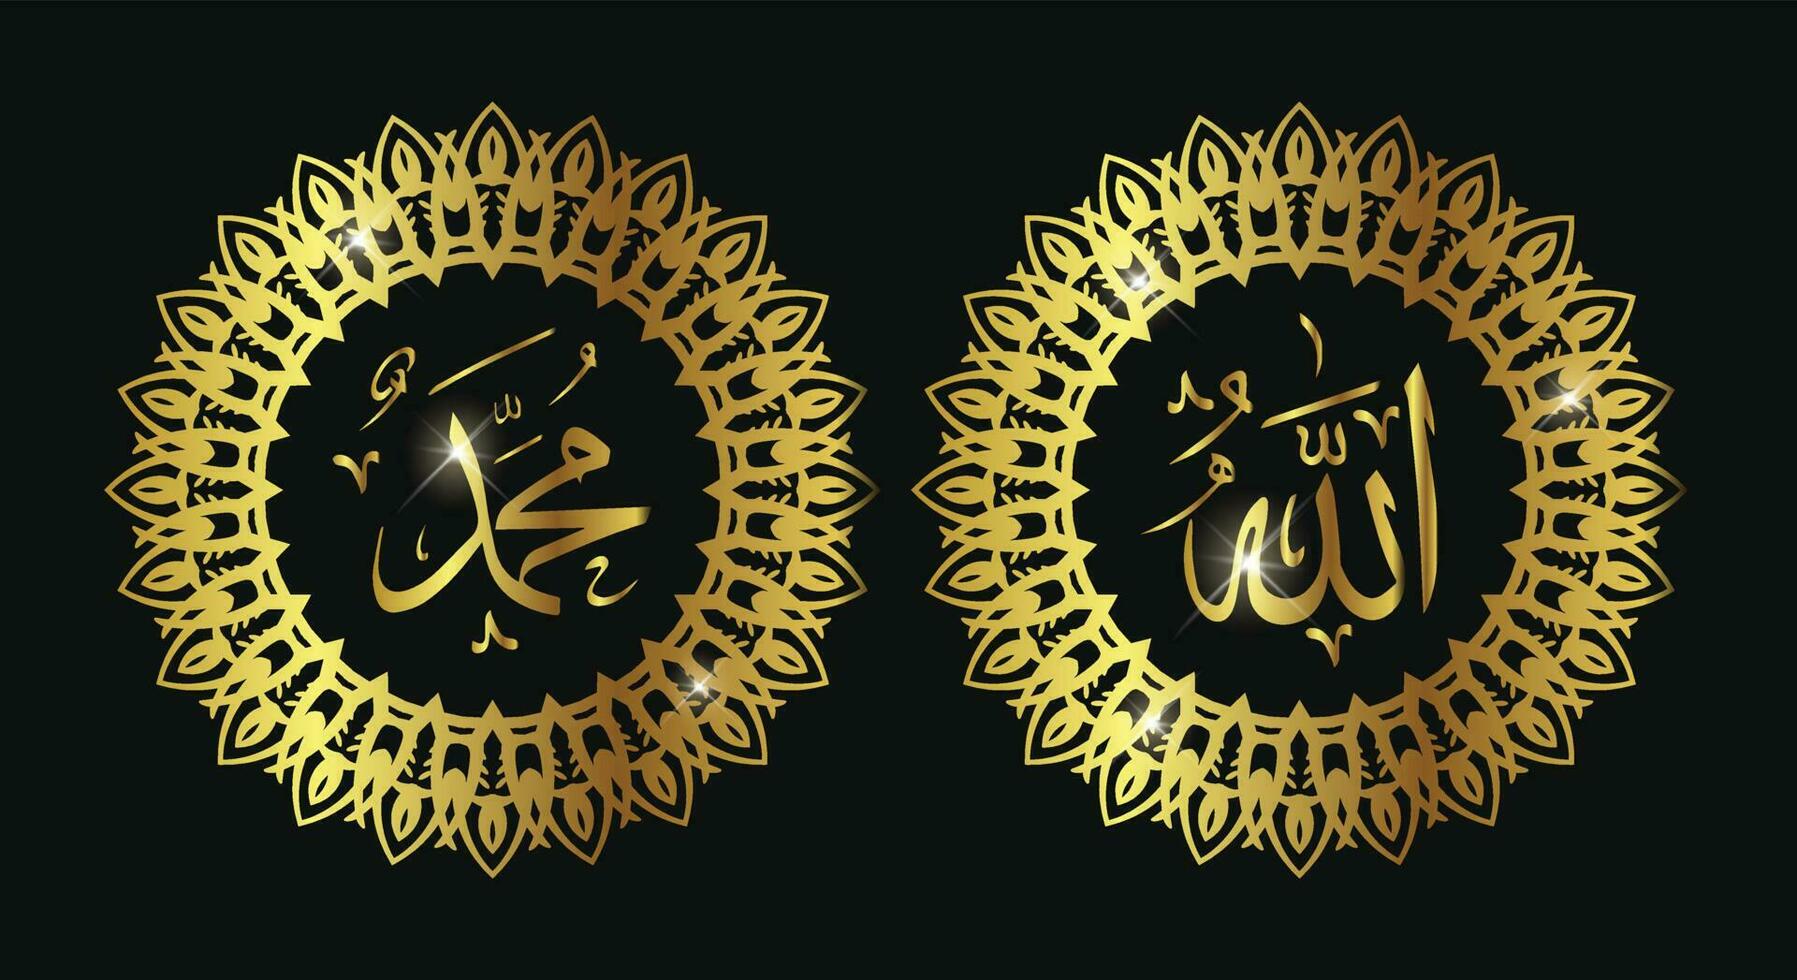 allah muhammad caligrafía árabe islámica con marco redondo y color dorado. Adecuado para decoración de mezquitas, decoración del hogar y para proyectos de diseño islámico. vector